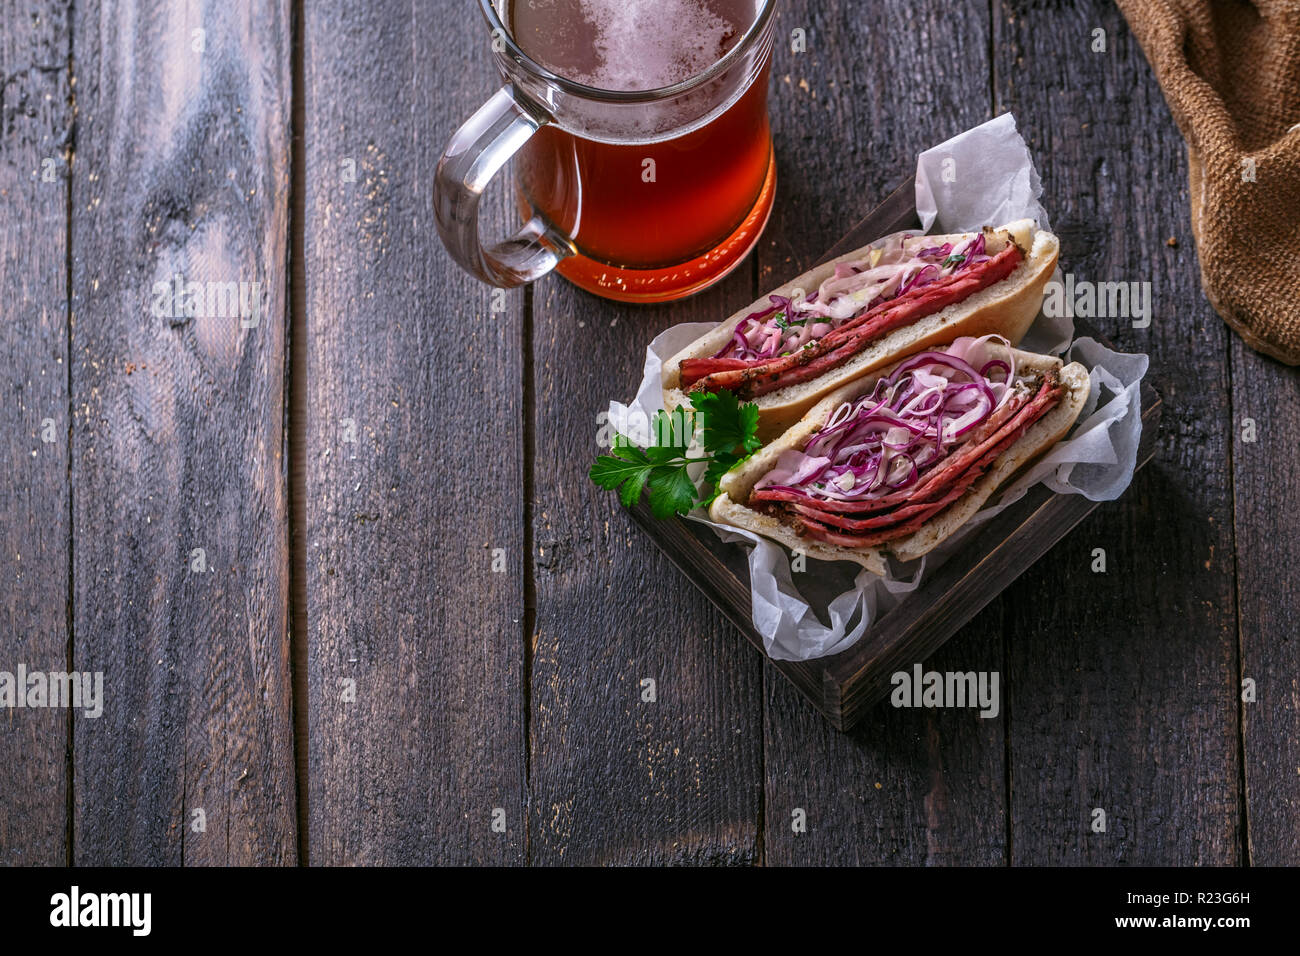 Sandwich au pastrami et coleslaw, style rustique, copy space Banque D'Images